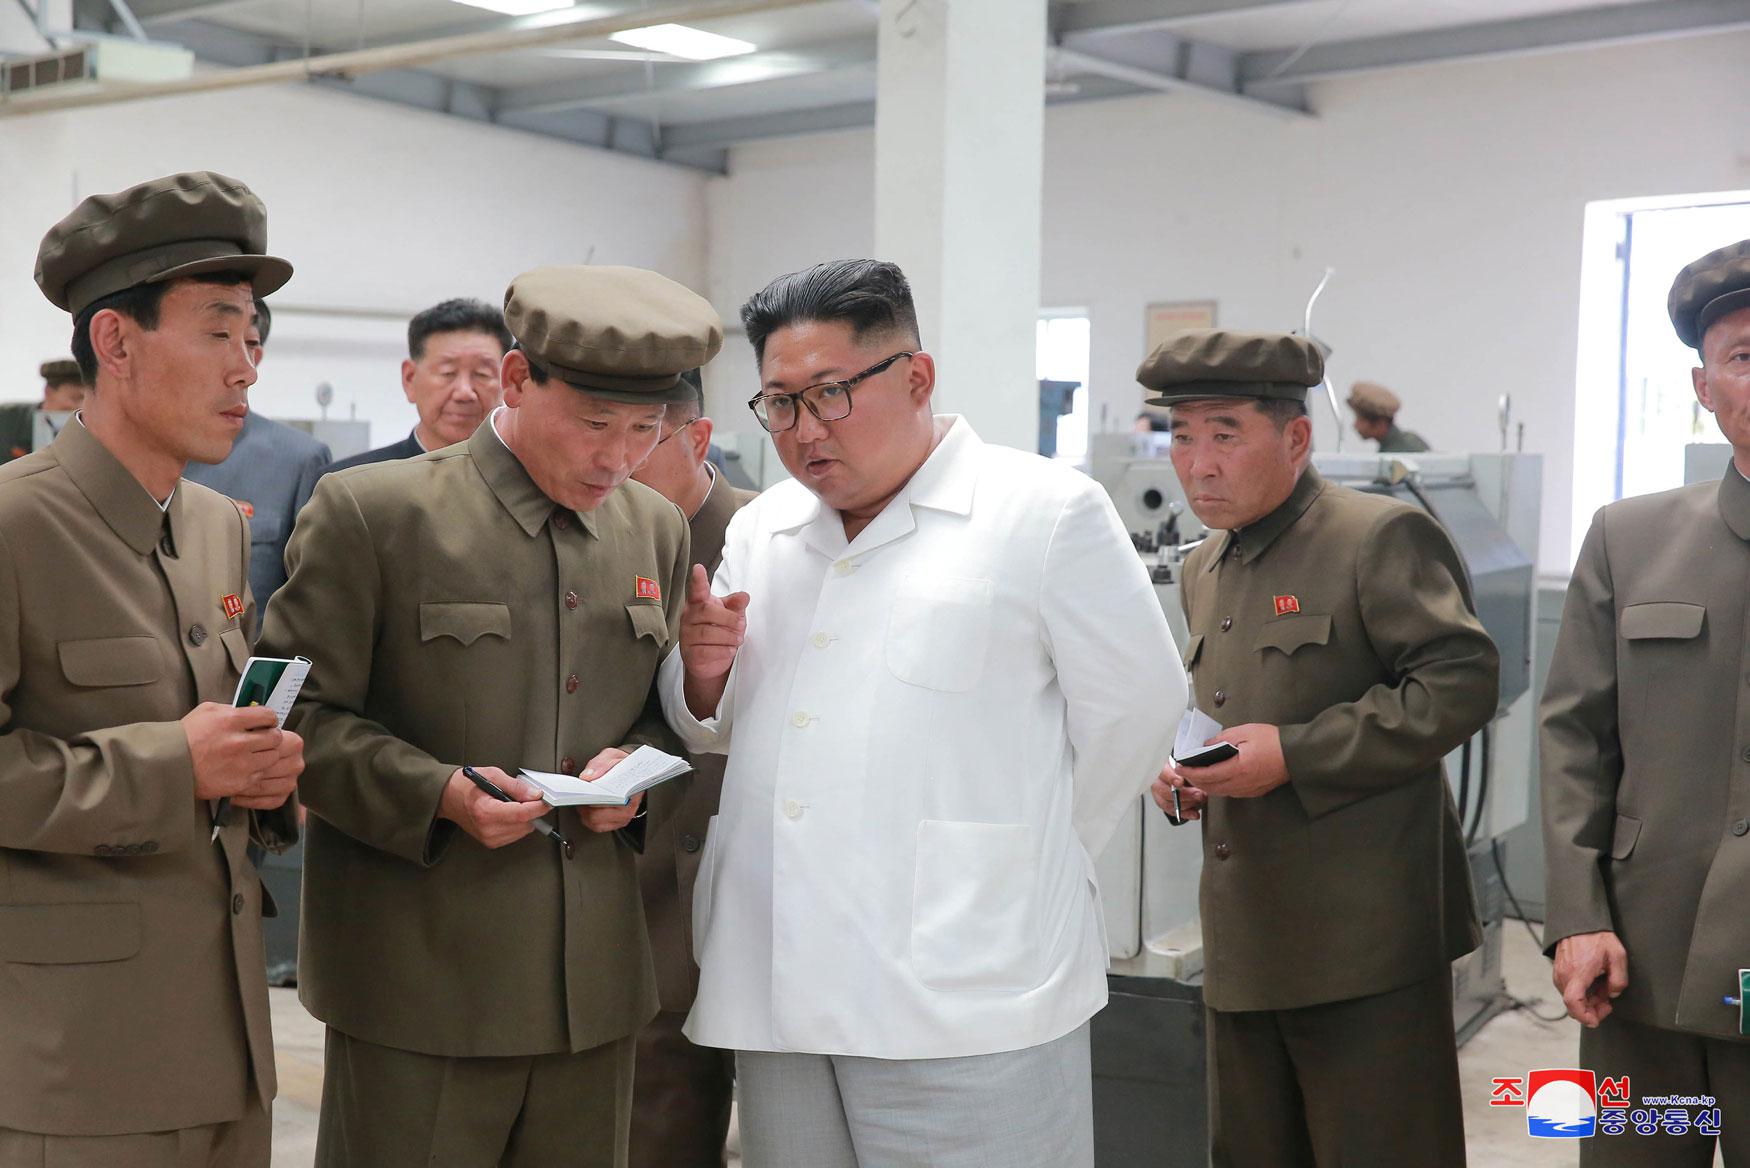 كوريا الشمالية تحيط اختبار سلاح تكتيكي بهالة من الغموض